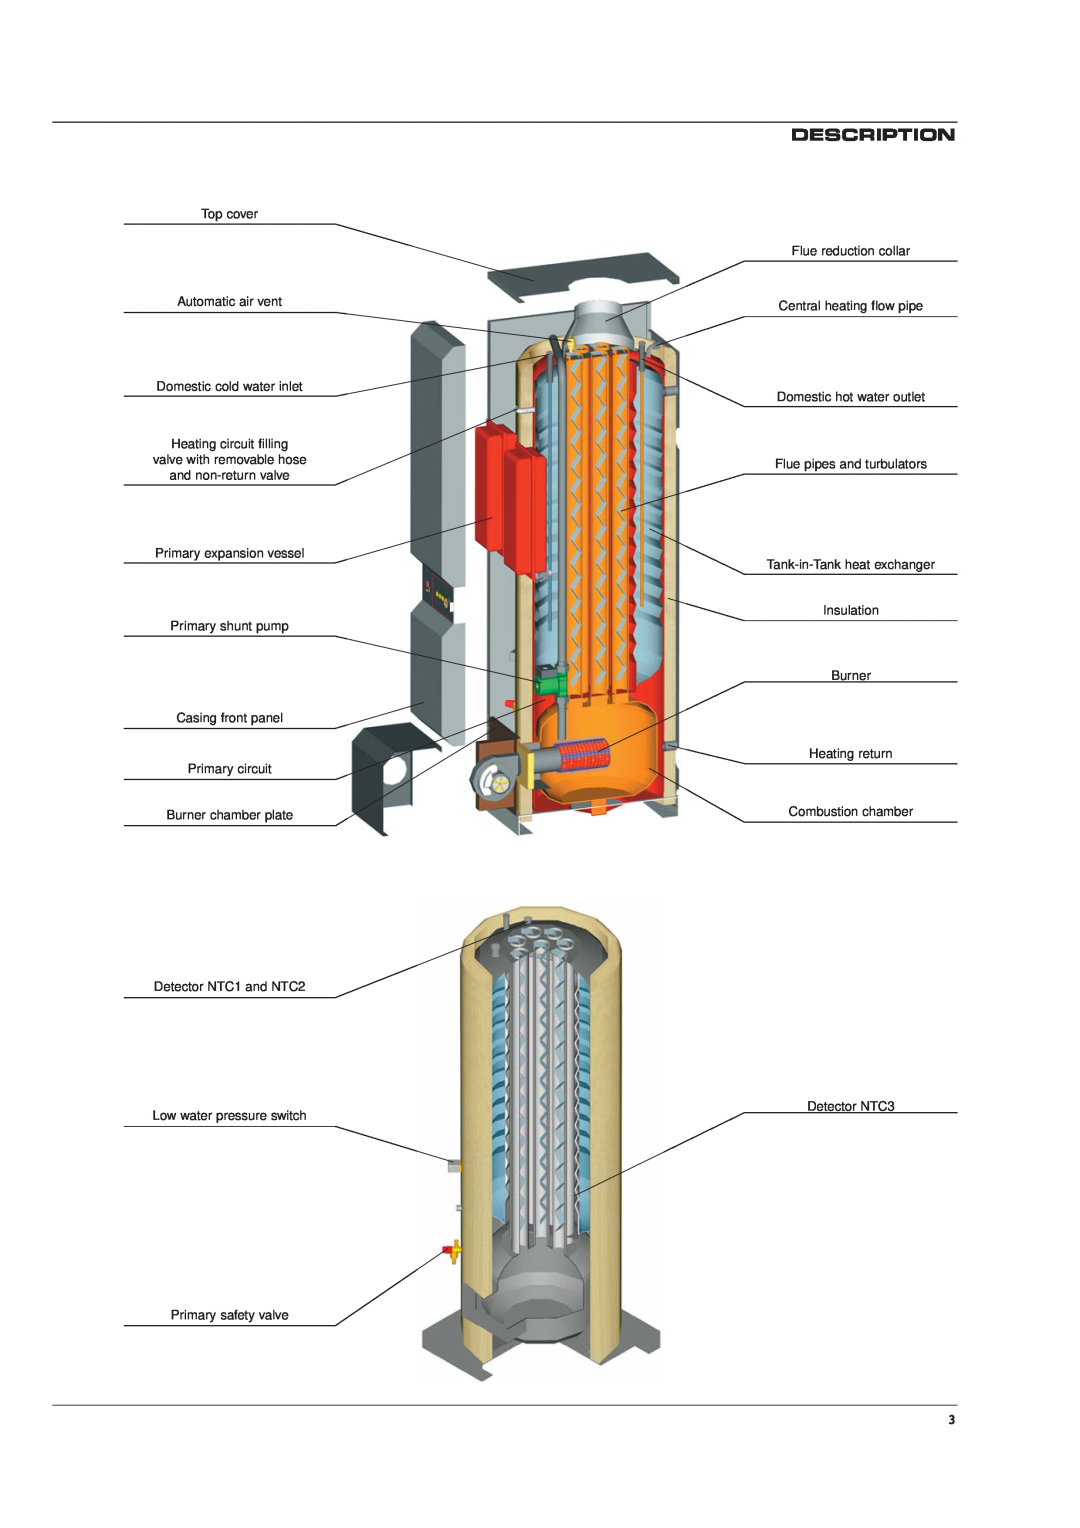 Heatmaster HM 101, HM 71 manual Description, Top cover Automatic air vent 